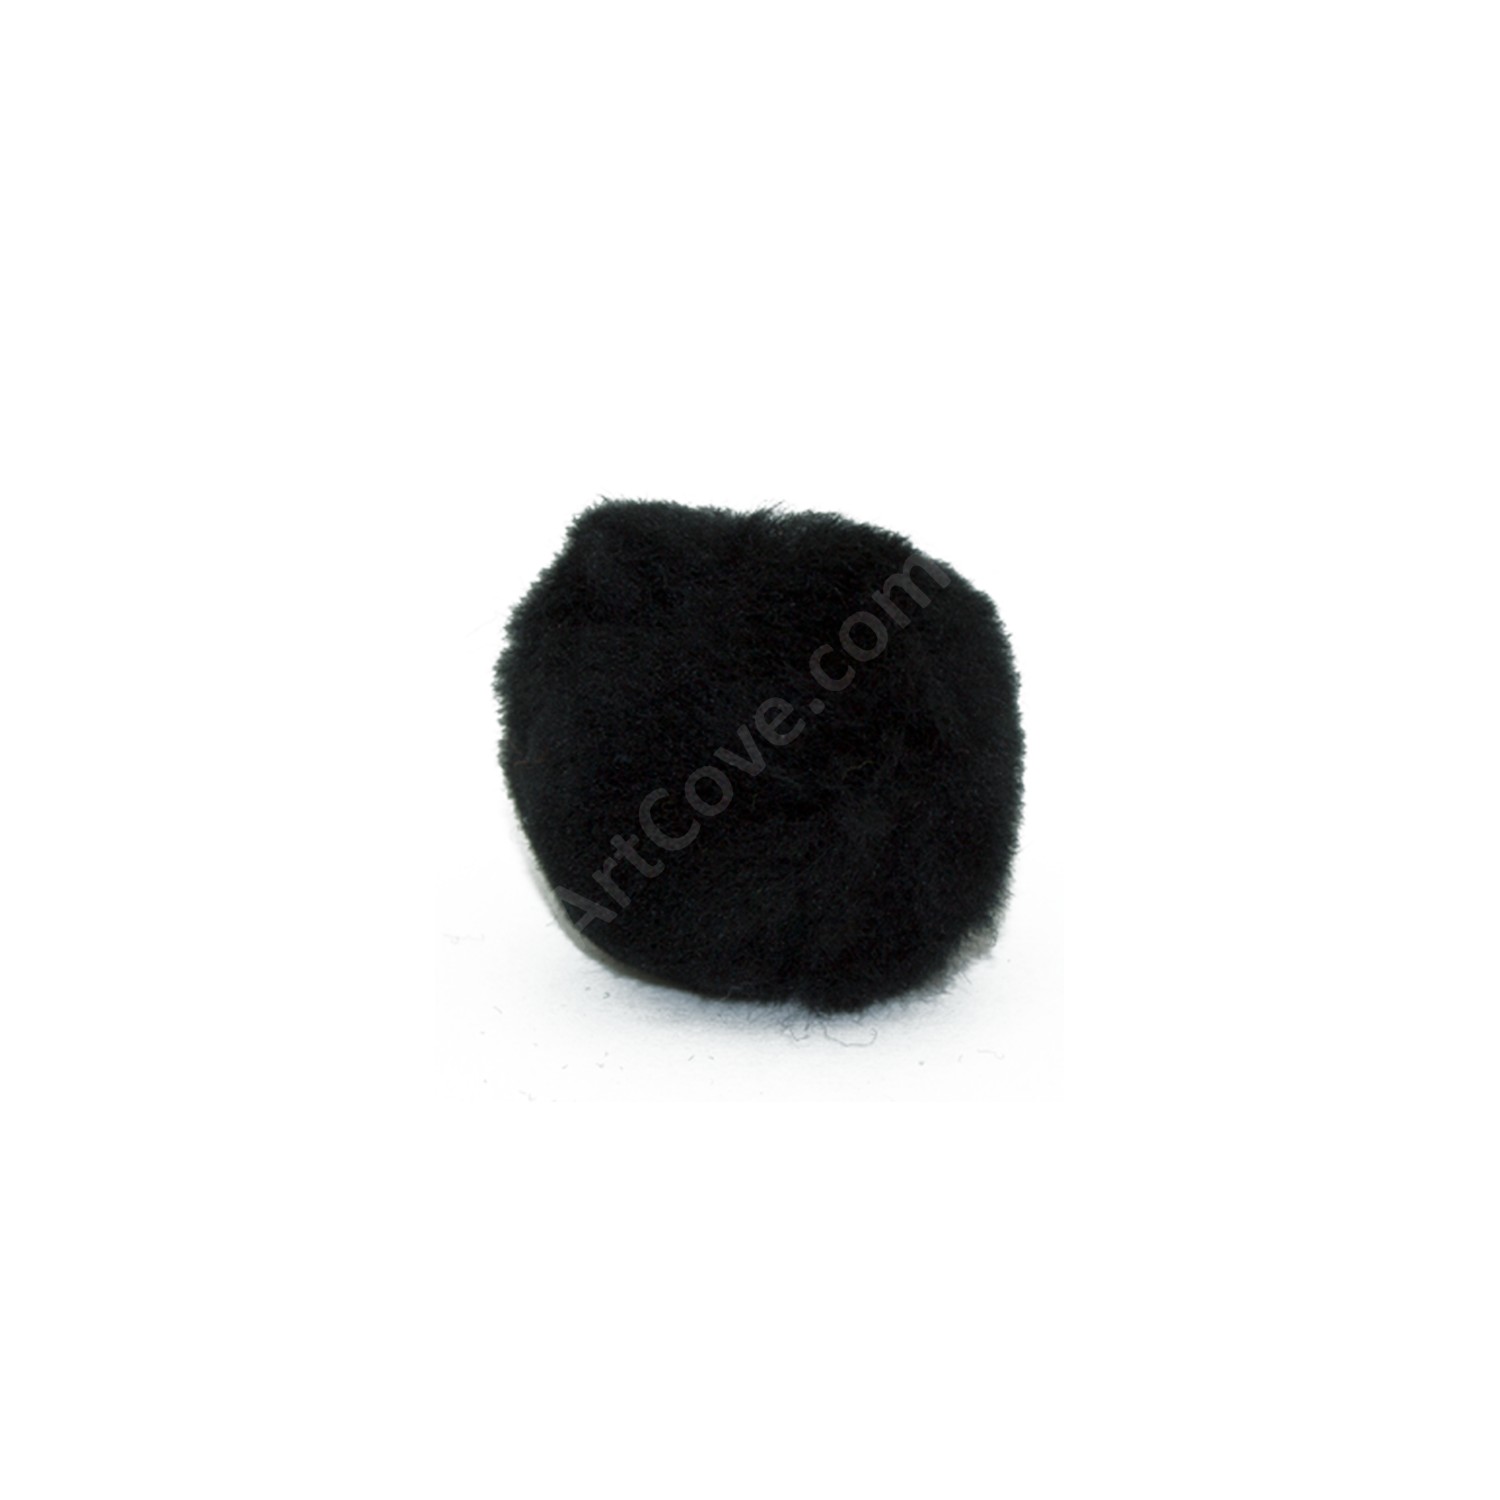 2.5 Inch Black Craft Pom Poms Bulk 1,000 Pieces